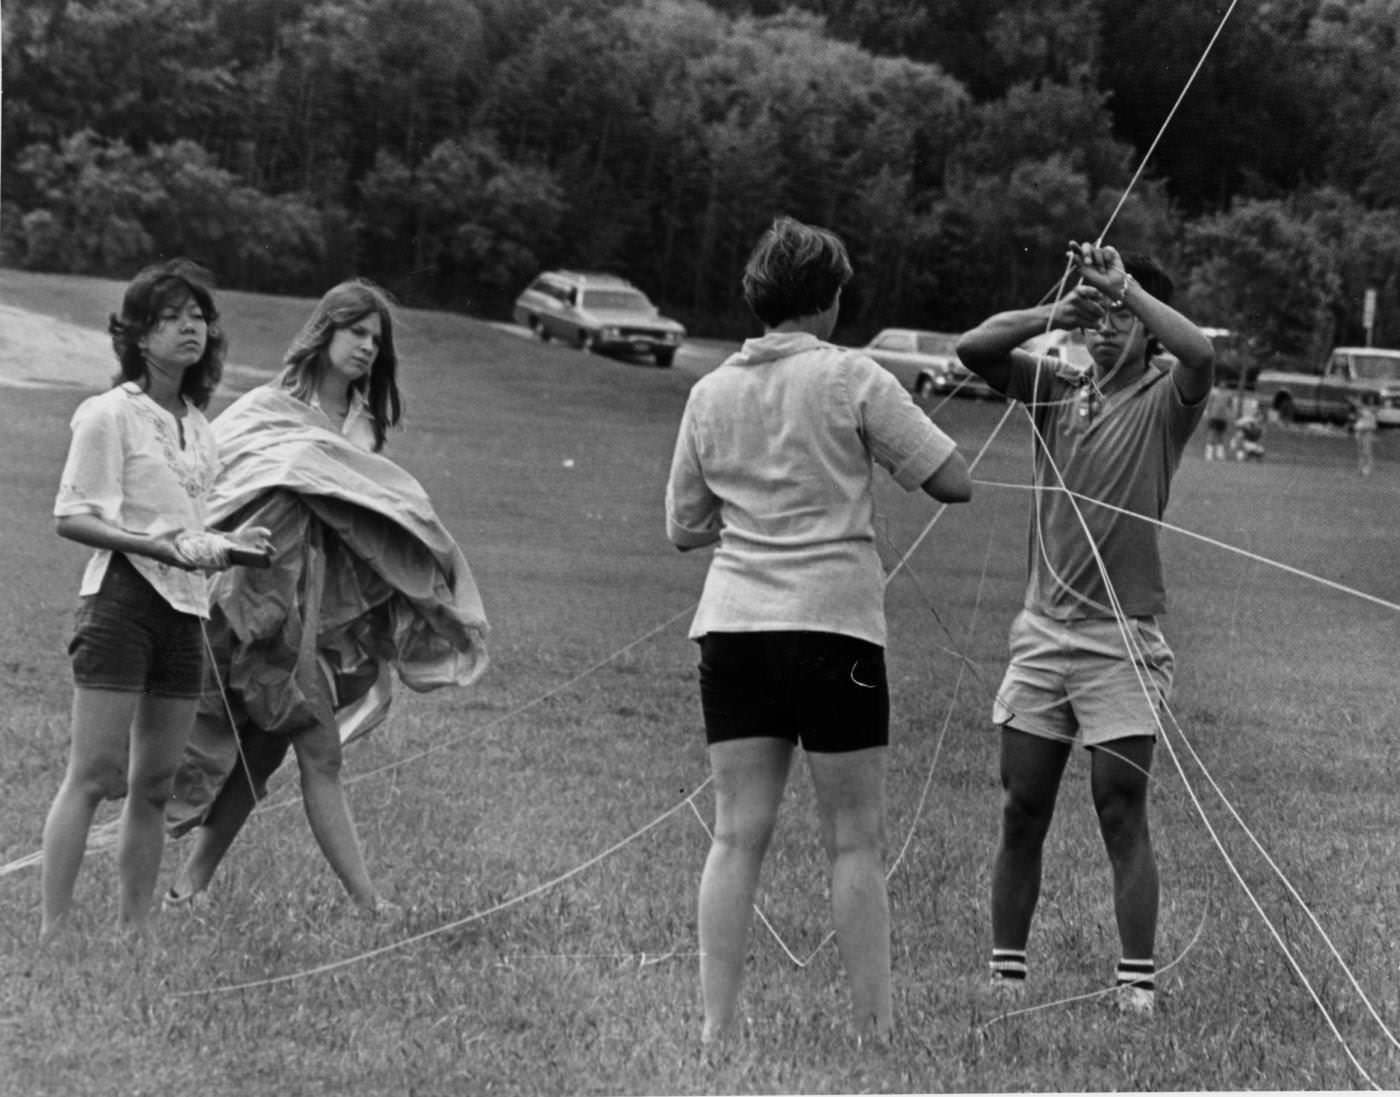 All Tied up on Zilker Kite Field, 1969